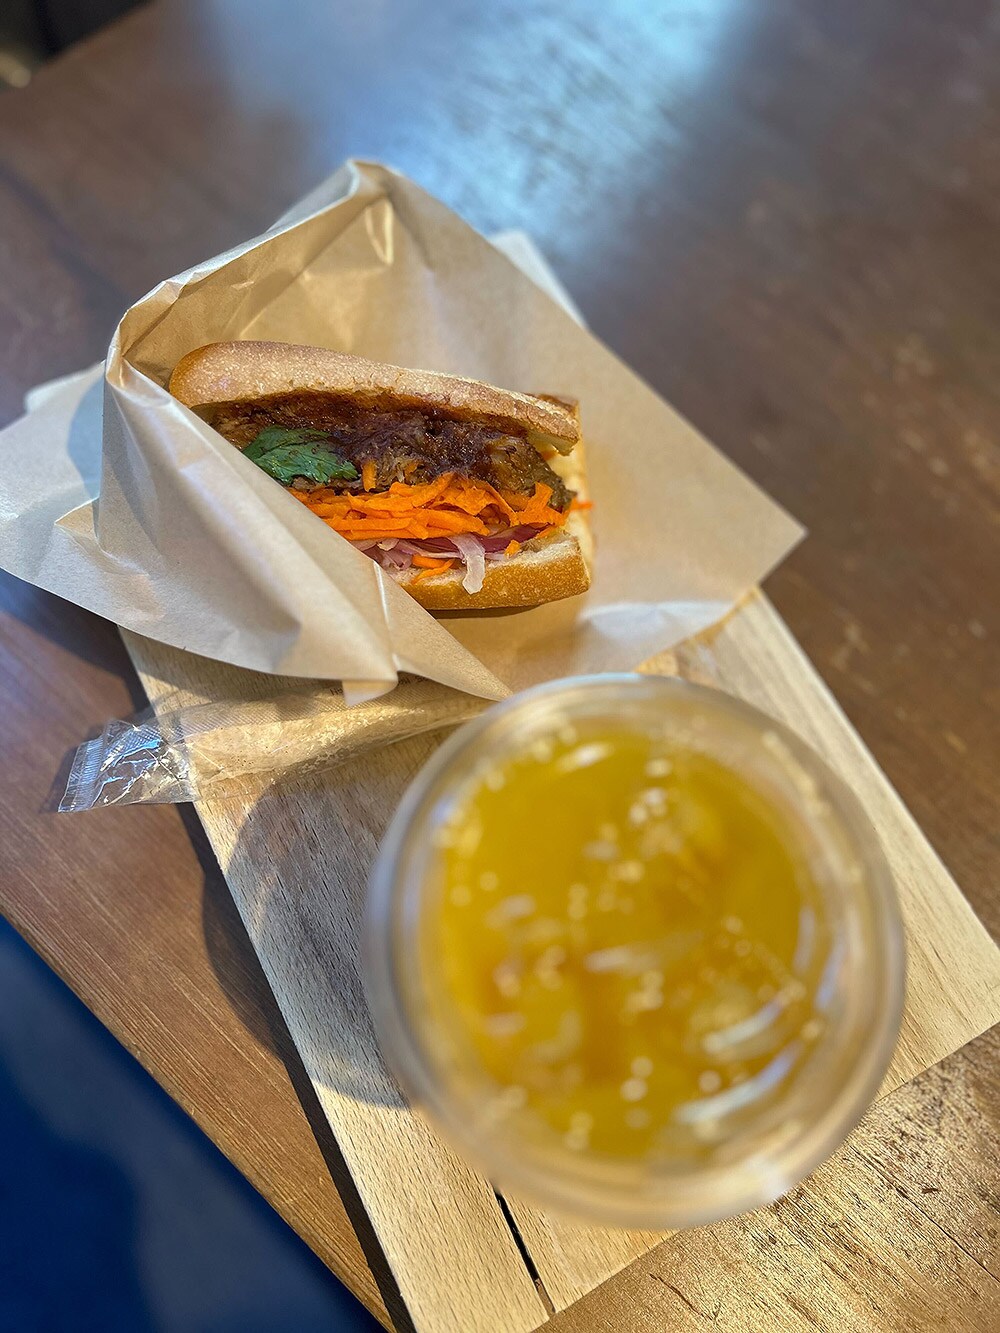 ライターが撮影したサンドイッチとオレンジジュース。サンドイッチにピントが合ってしまい、高さの違うオレンジジュースがぼやけて違和感のある写真に。